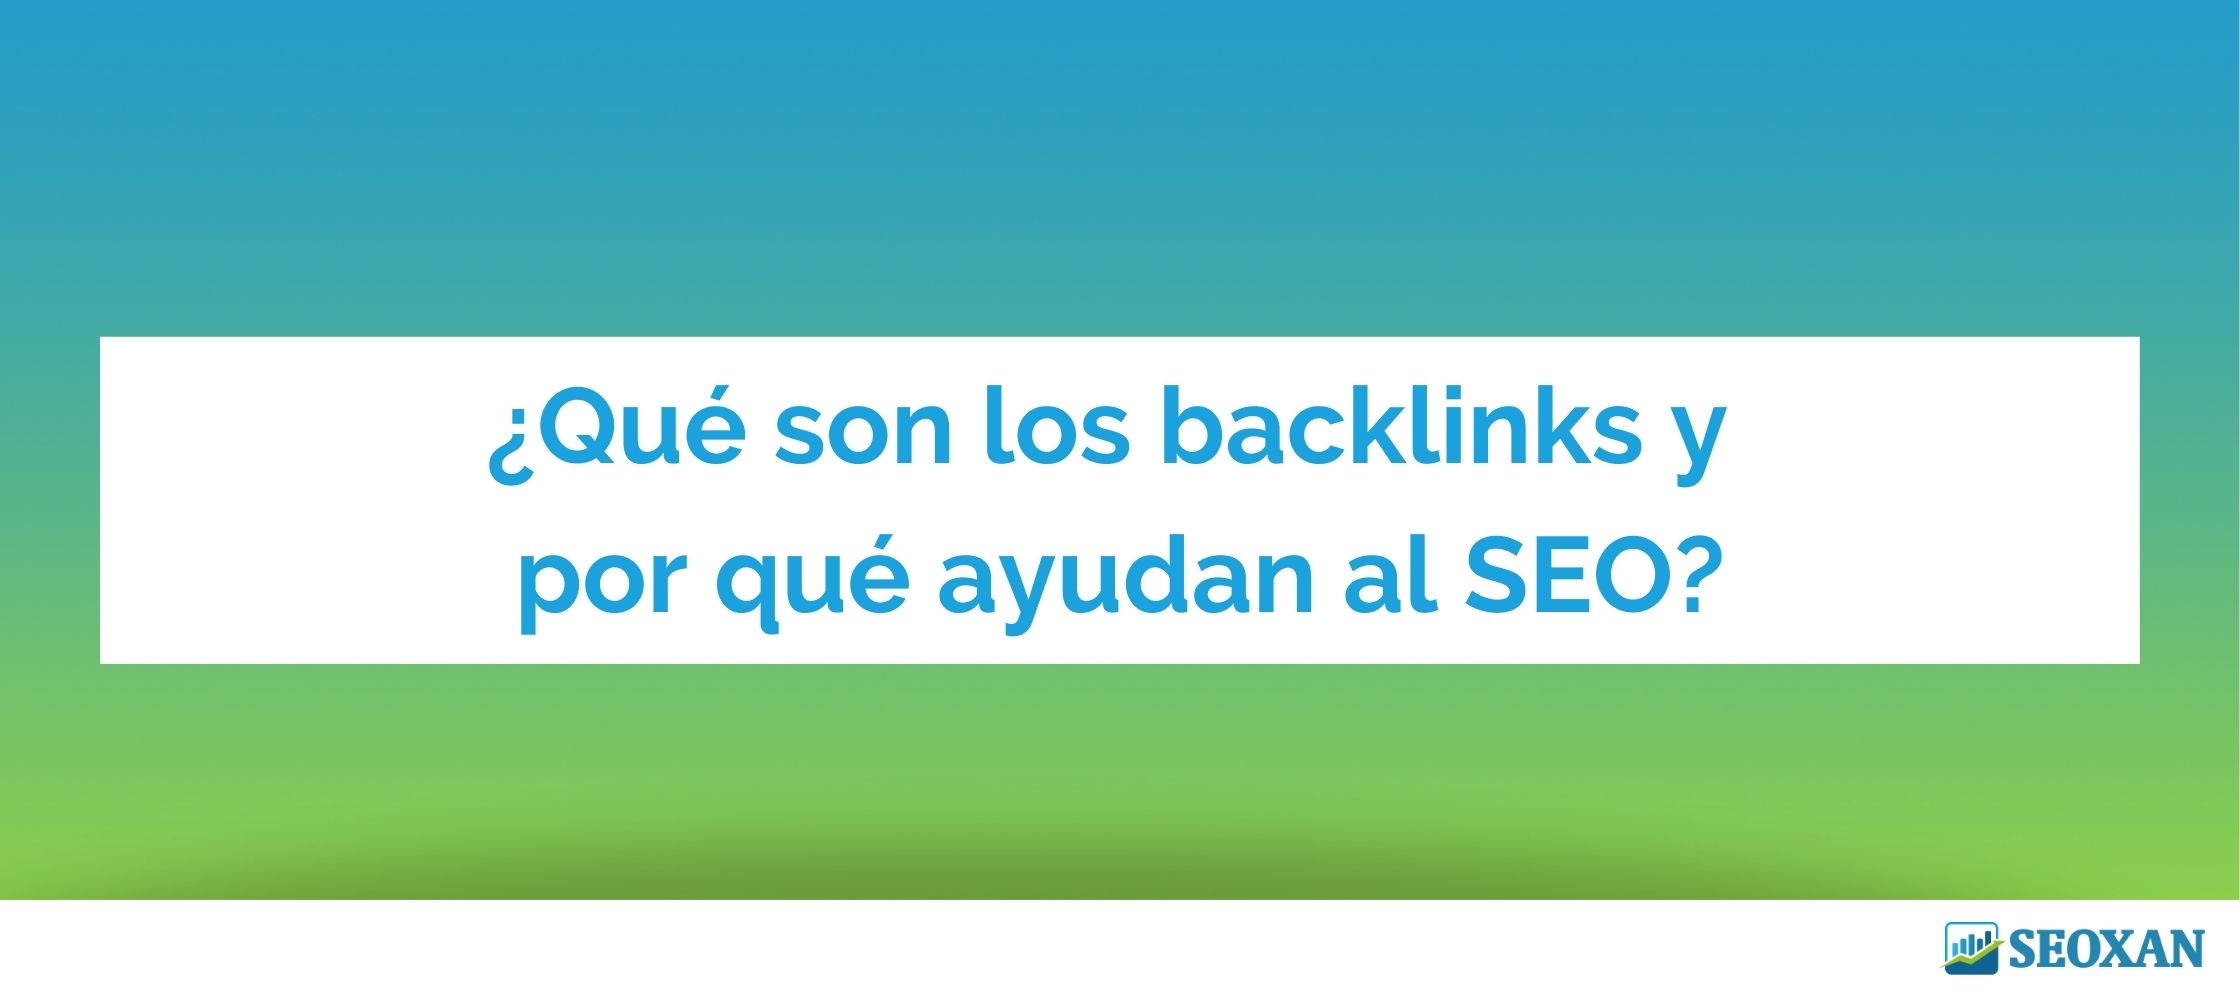 ¿Qué son los backlinks y por qué ayudan al SEO?